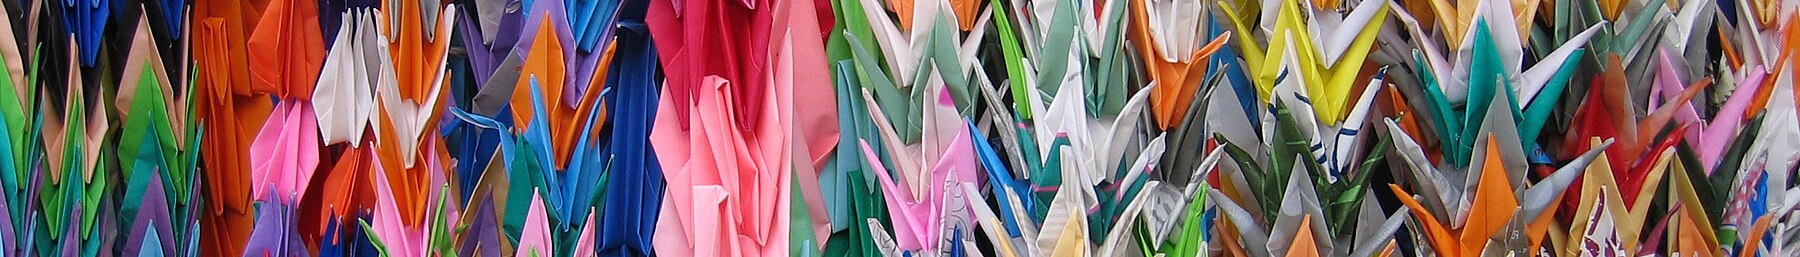 Hiroşima banner Origami kranları.jpg